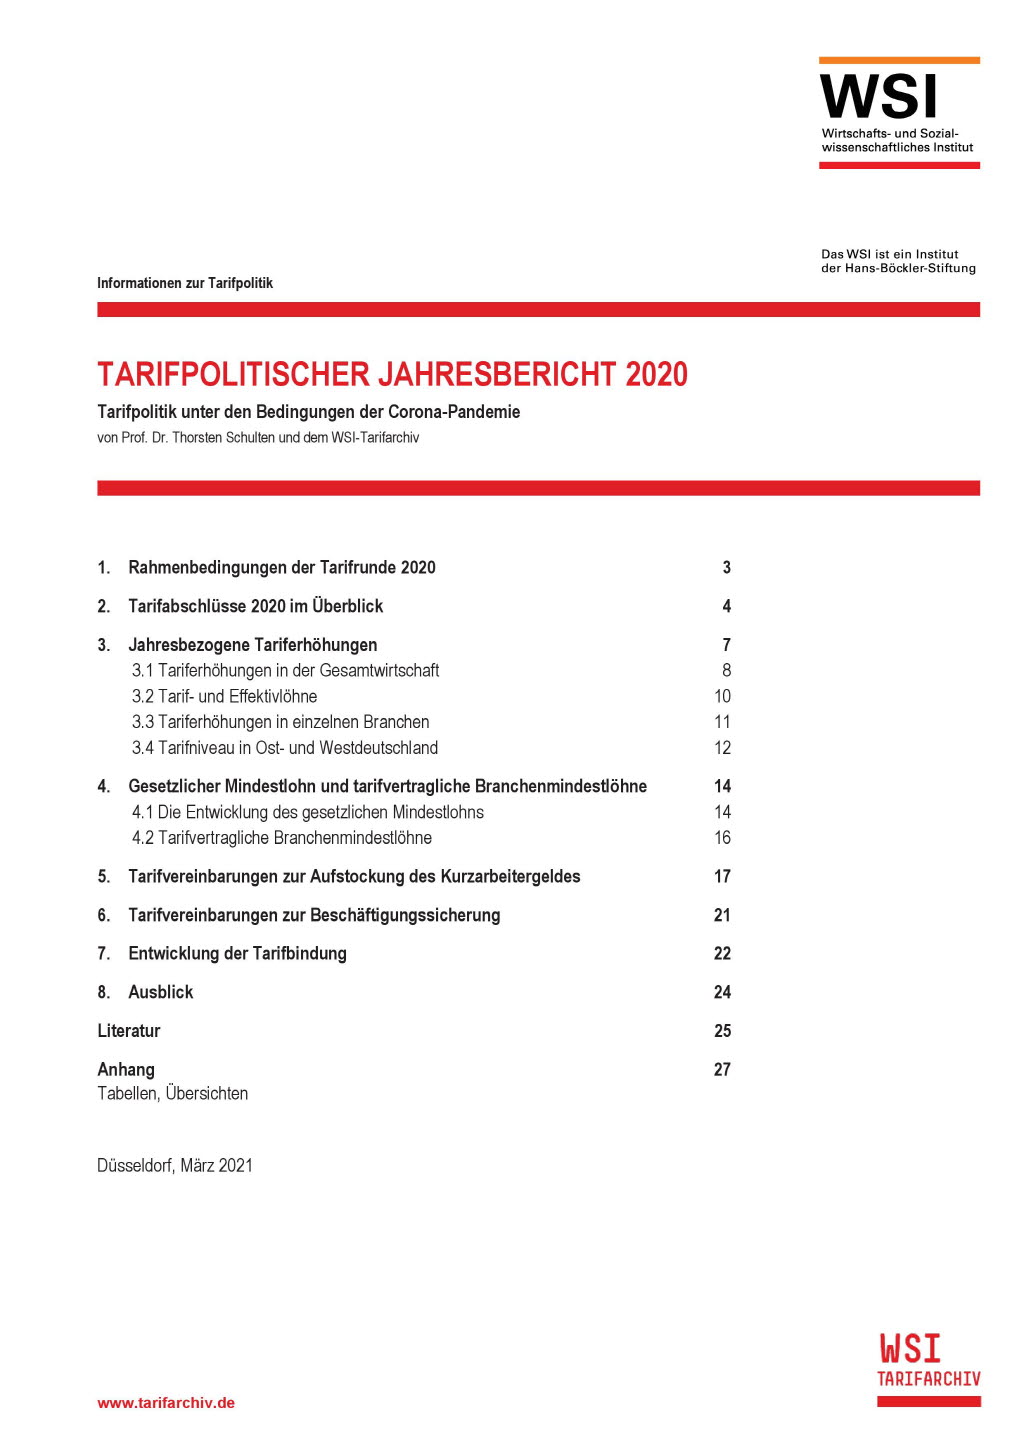 Tarifpolitischer Jahresbericht 2020